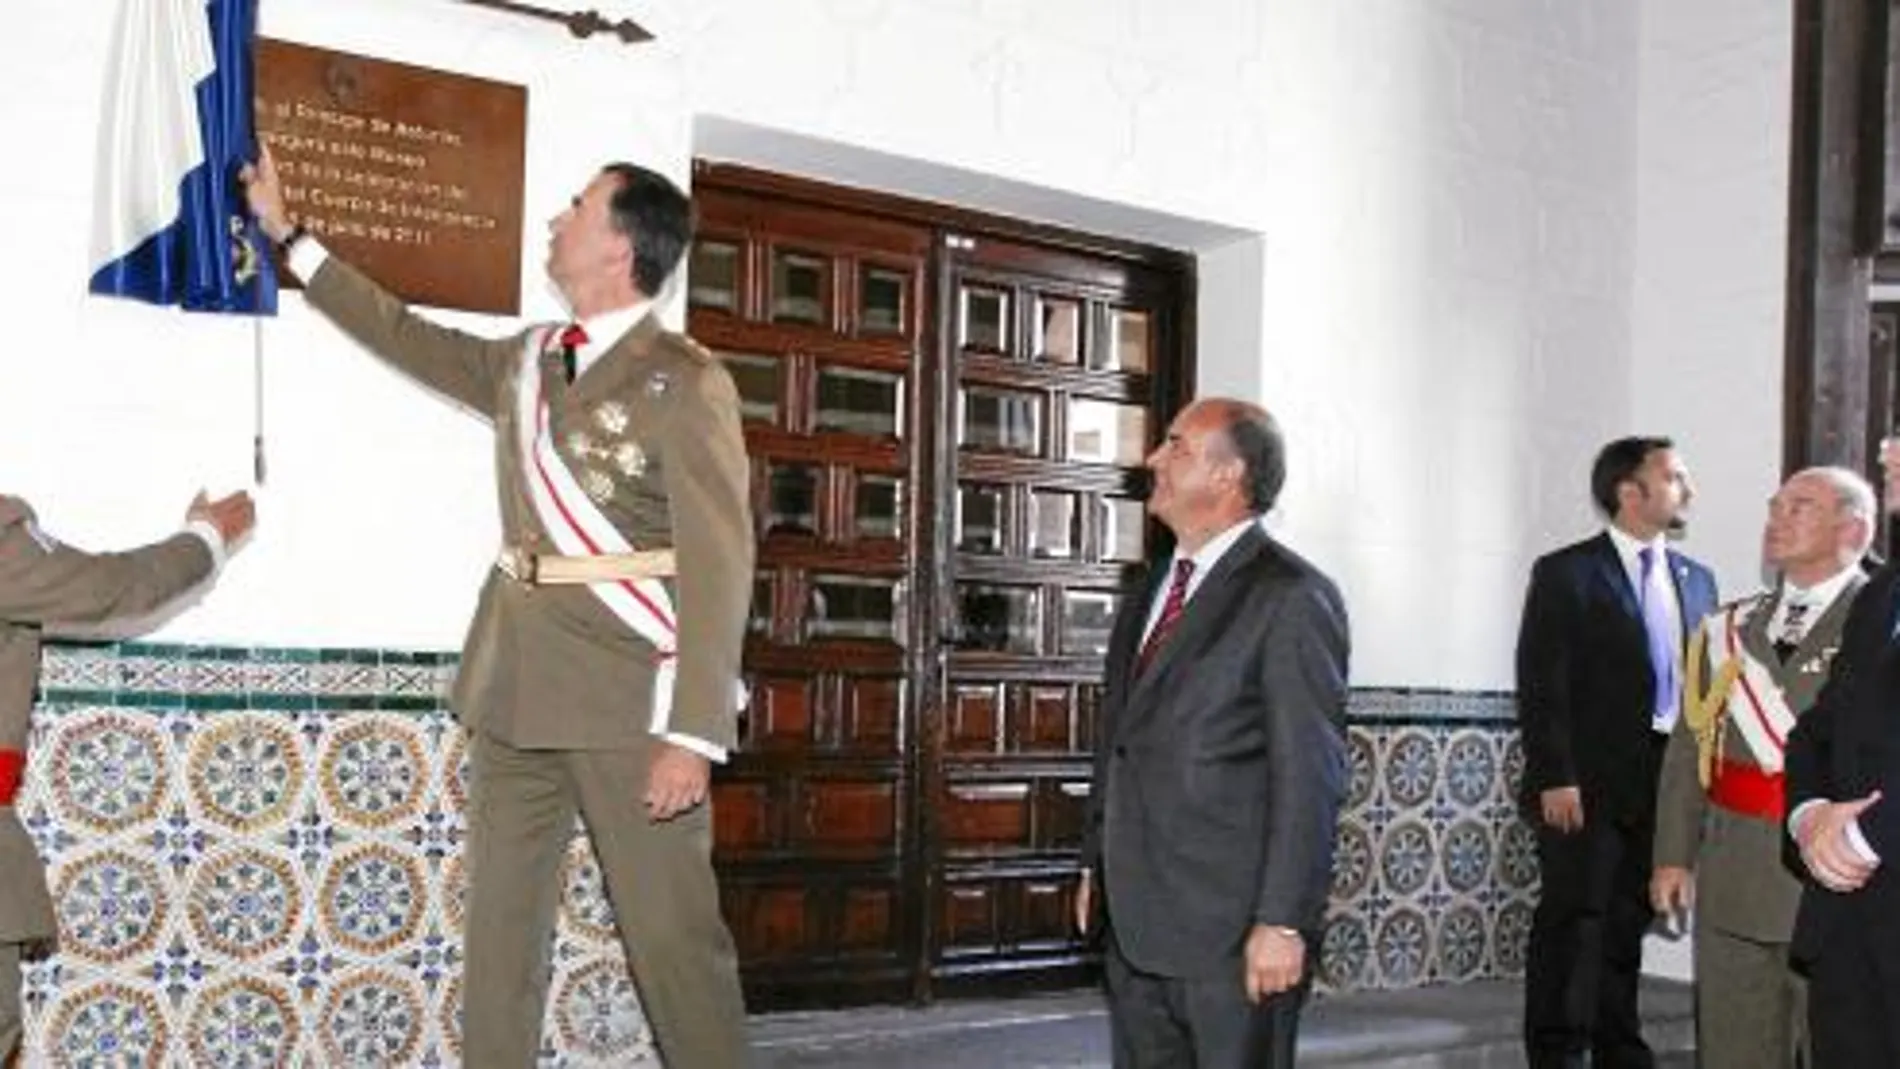 El Príncipe Felipe inaugura el Museo de Intendencia, en presencia de García Nieto, Herrera y García-Cirac